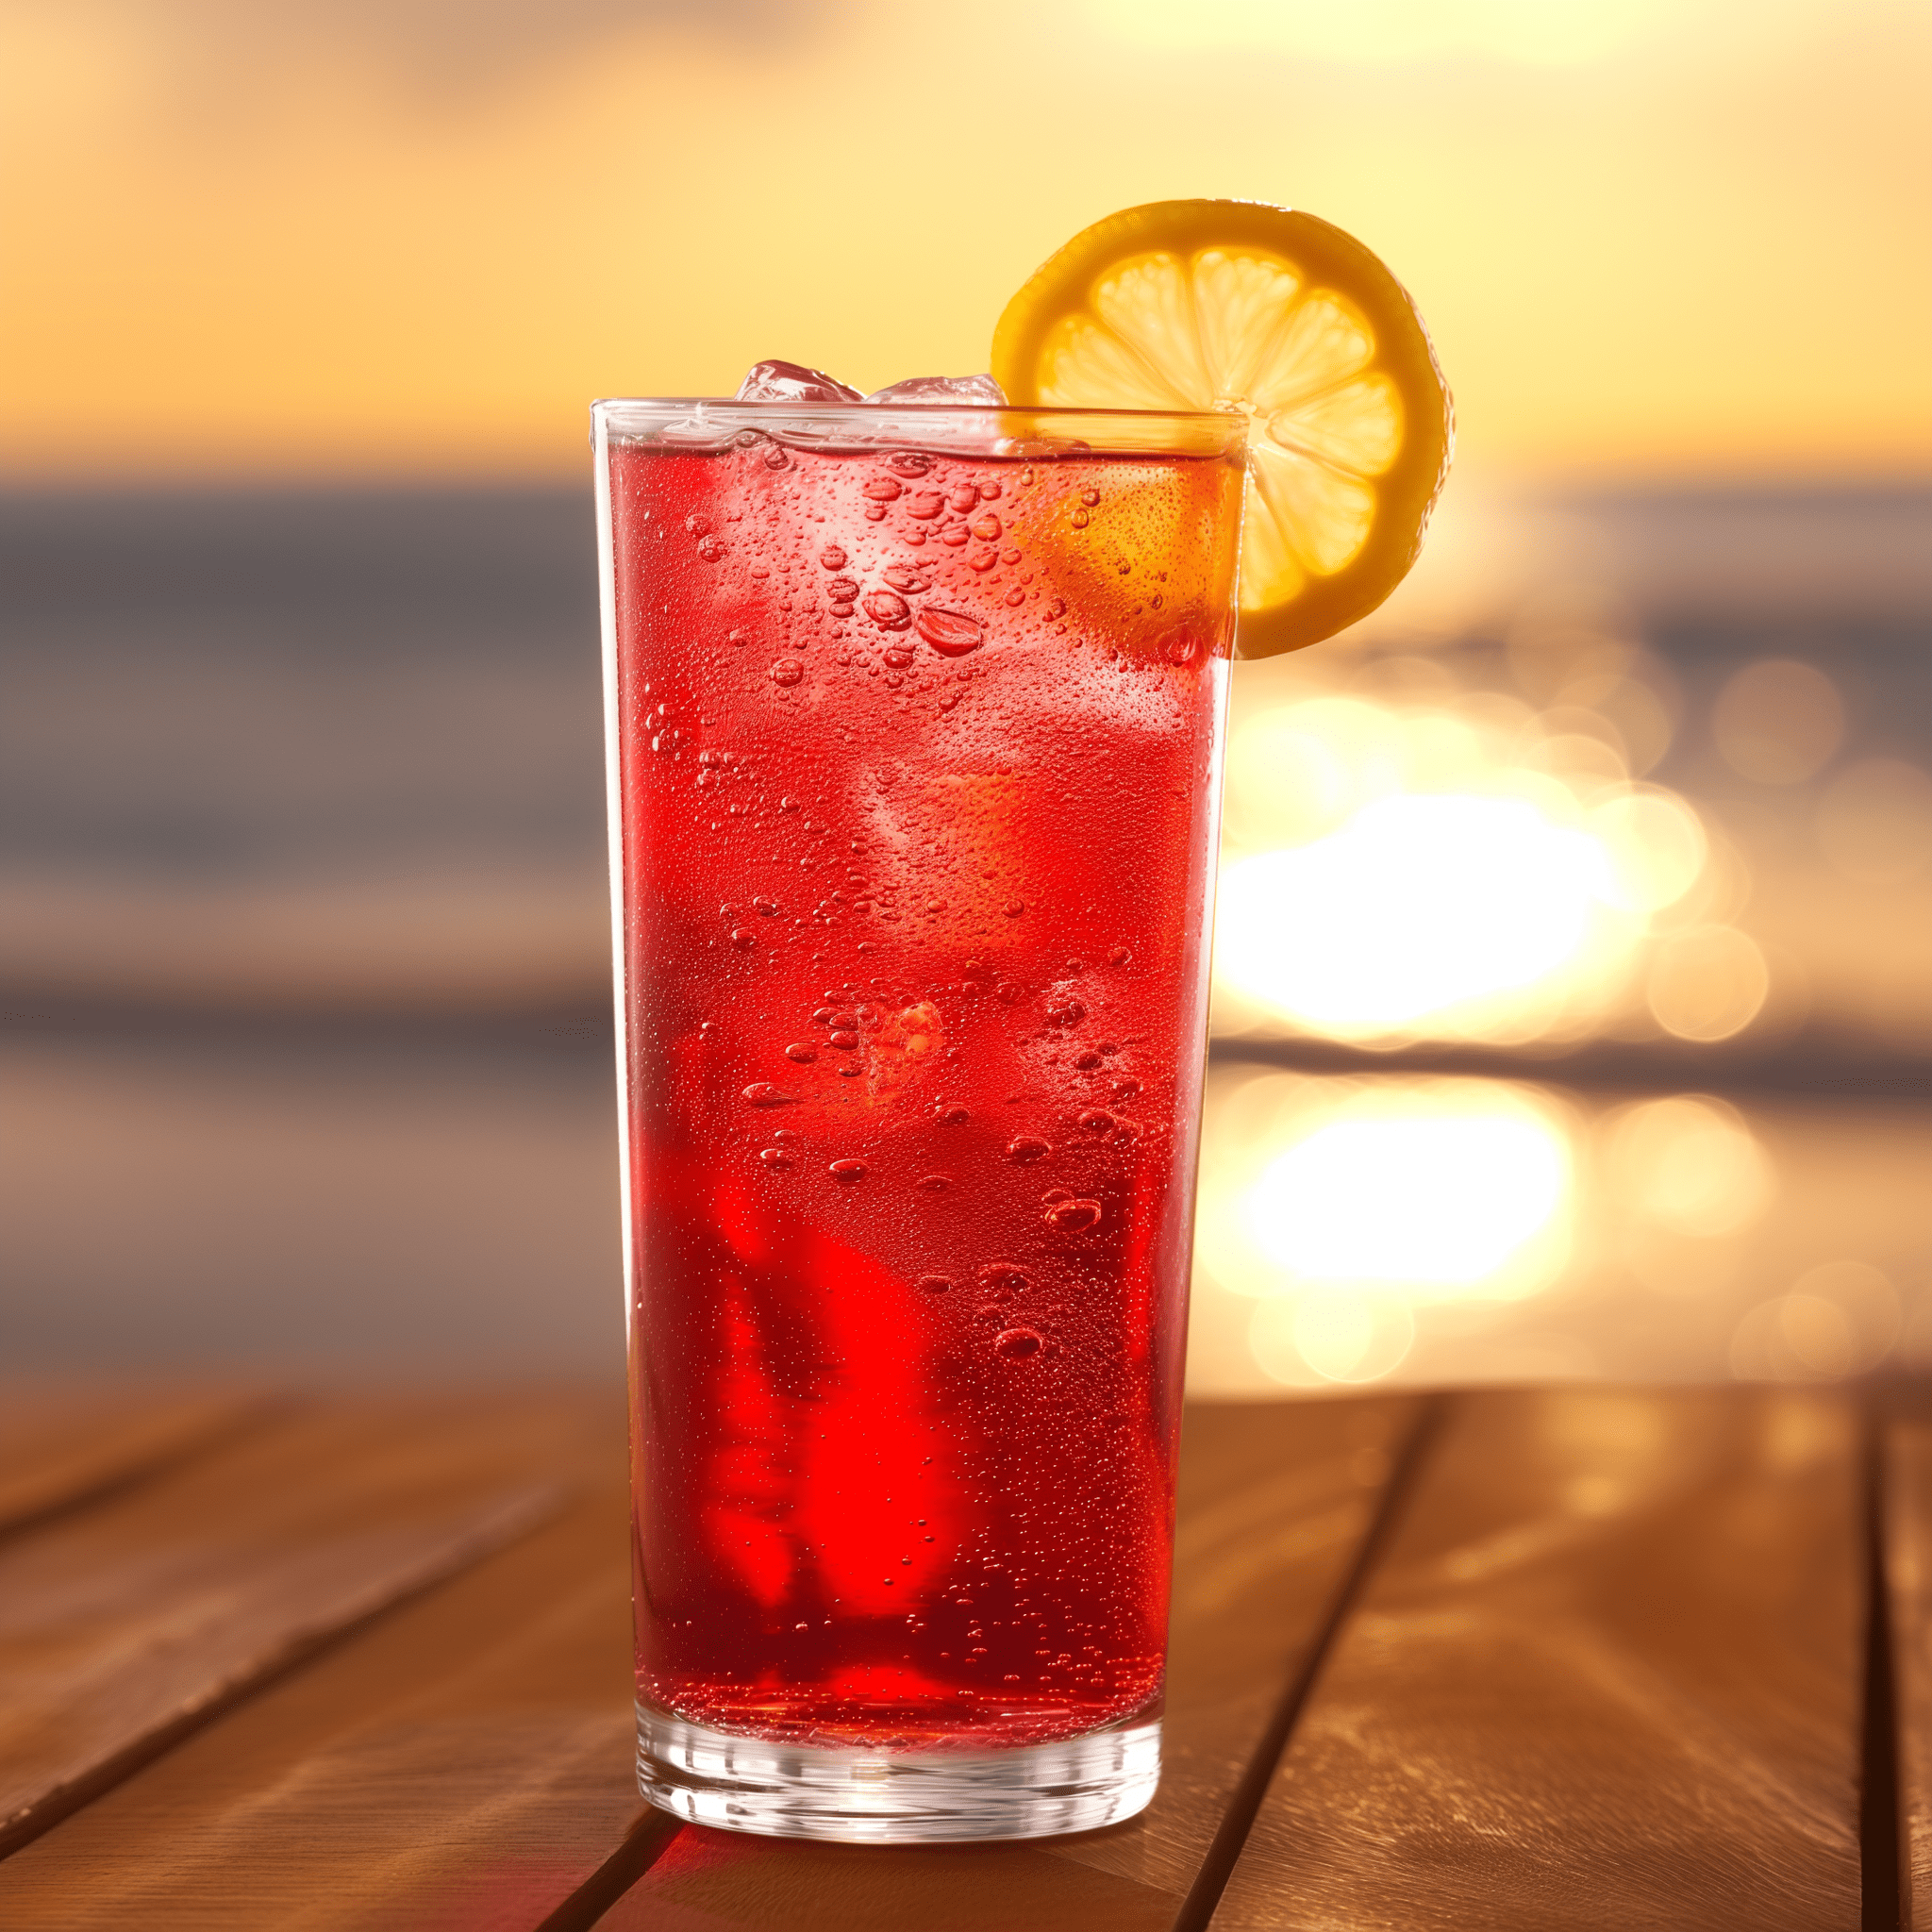 Berry Bomb Cóctel Receta - El Berry Bomb es dulce y afrutado con un toque efervescente del Sprite. El vodka de frambuesa añade un sabor a bayas ácido que se equilibra con la dulzura del refresco. Es una bebida ligera y efervescente que se bebe fácilmente.